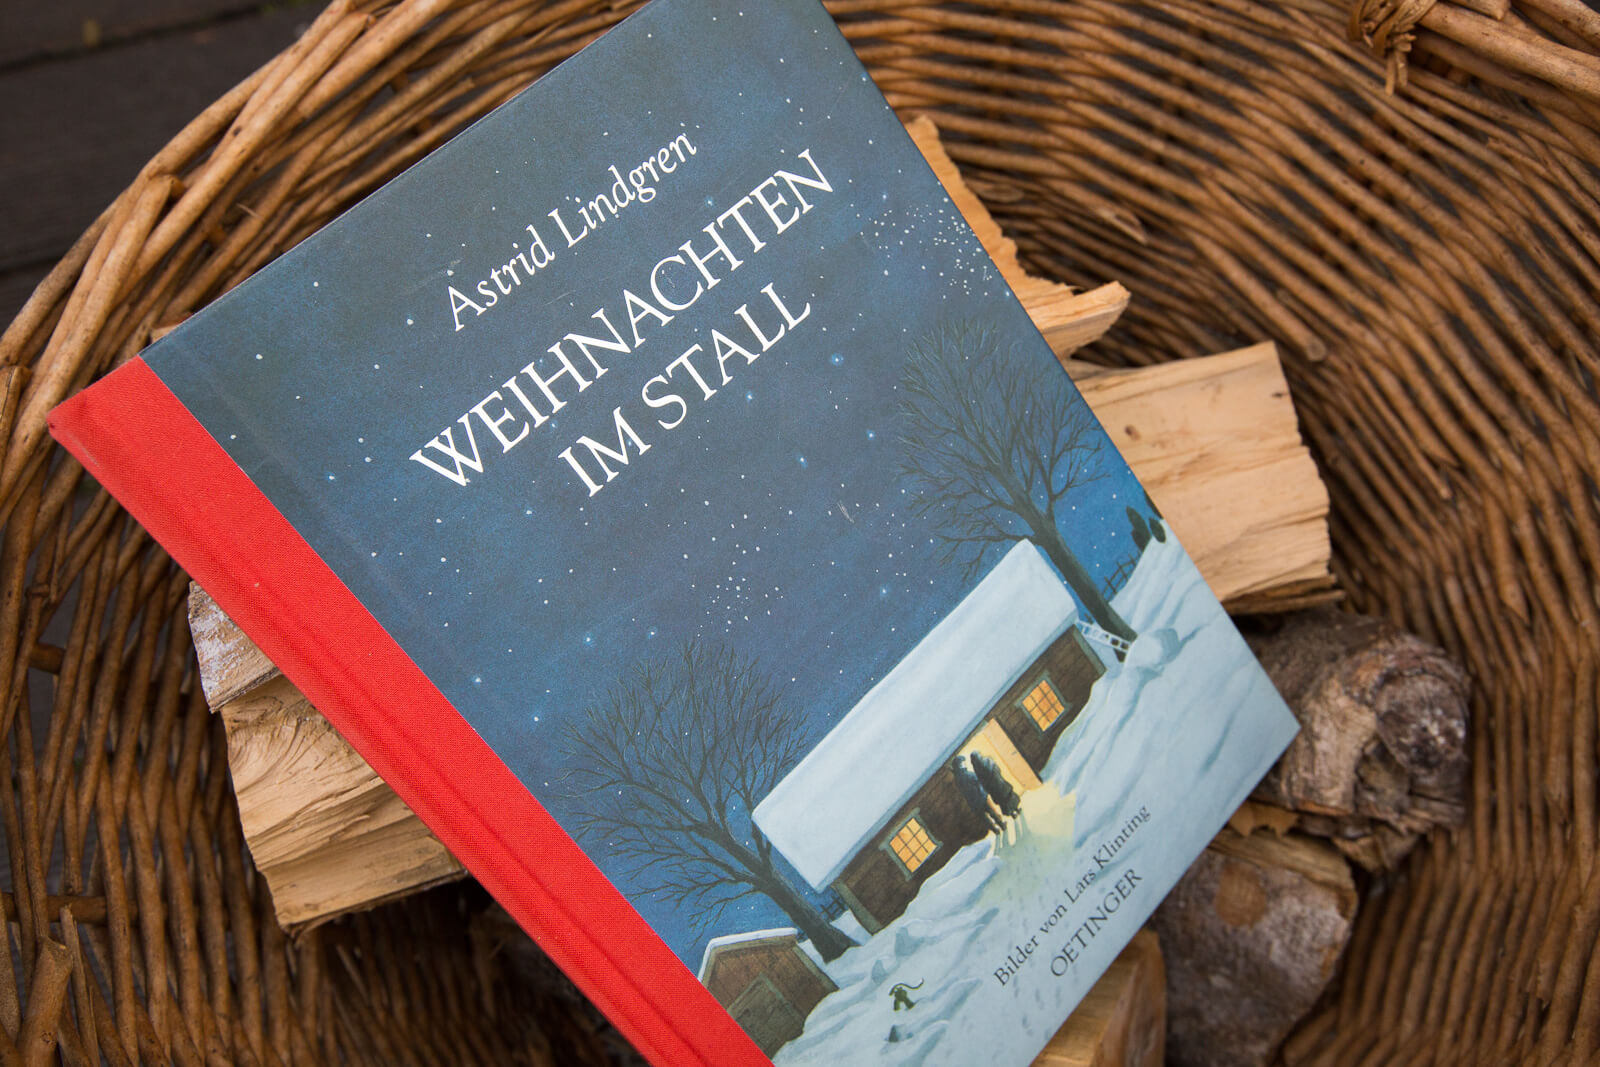 Zu den schönsten Geschichten gehört die Weihnachtsgeschichte. Die von Astrid Lindren ist ganz besonders.